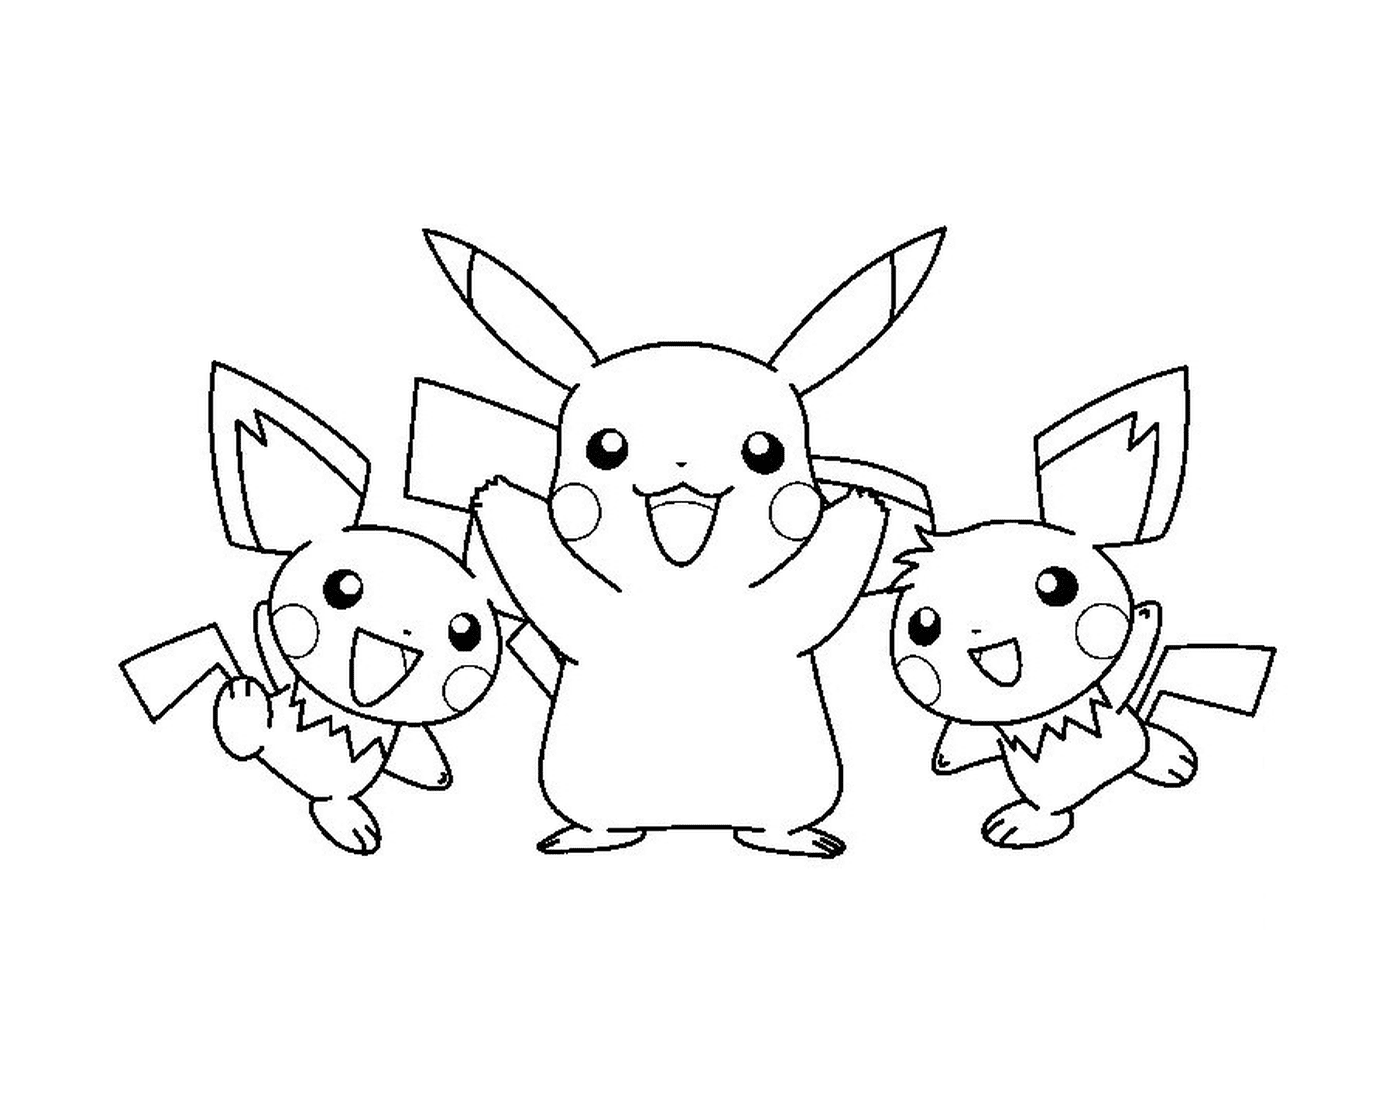  Três Pokémons juntos 